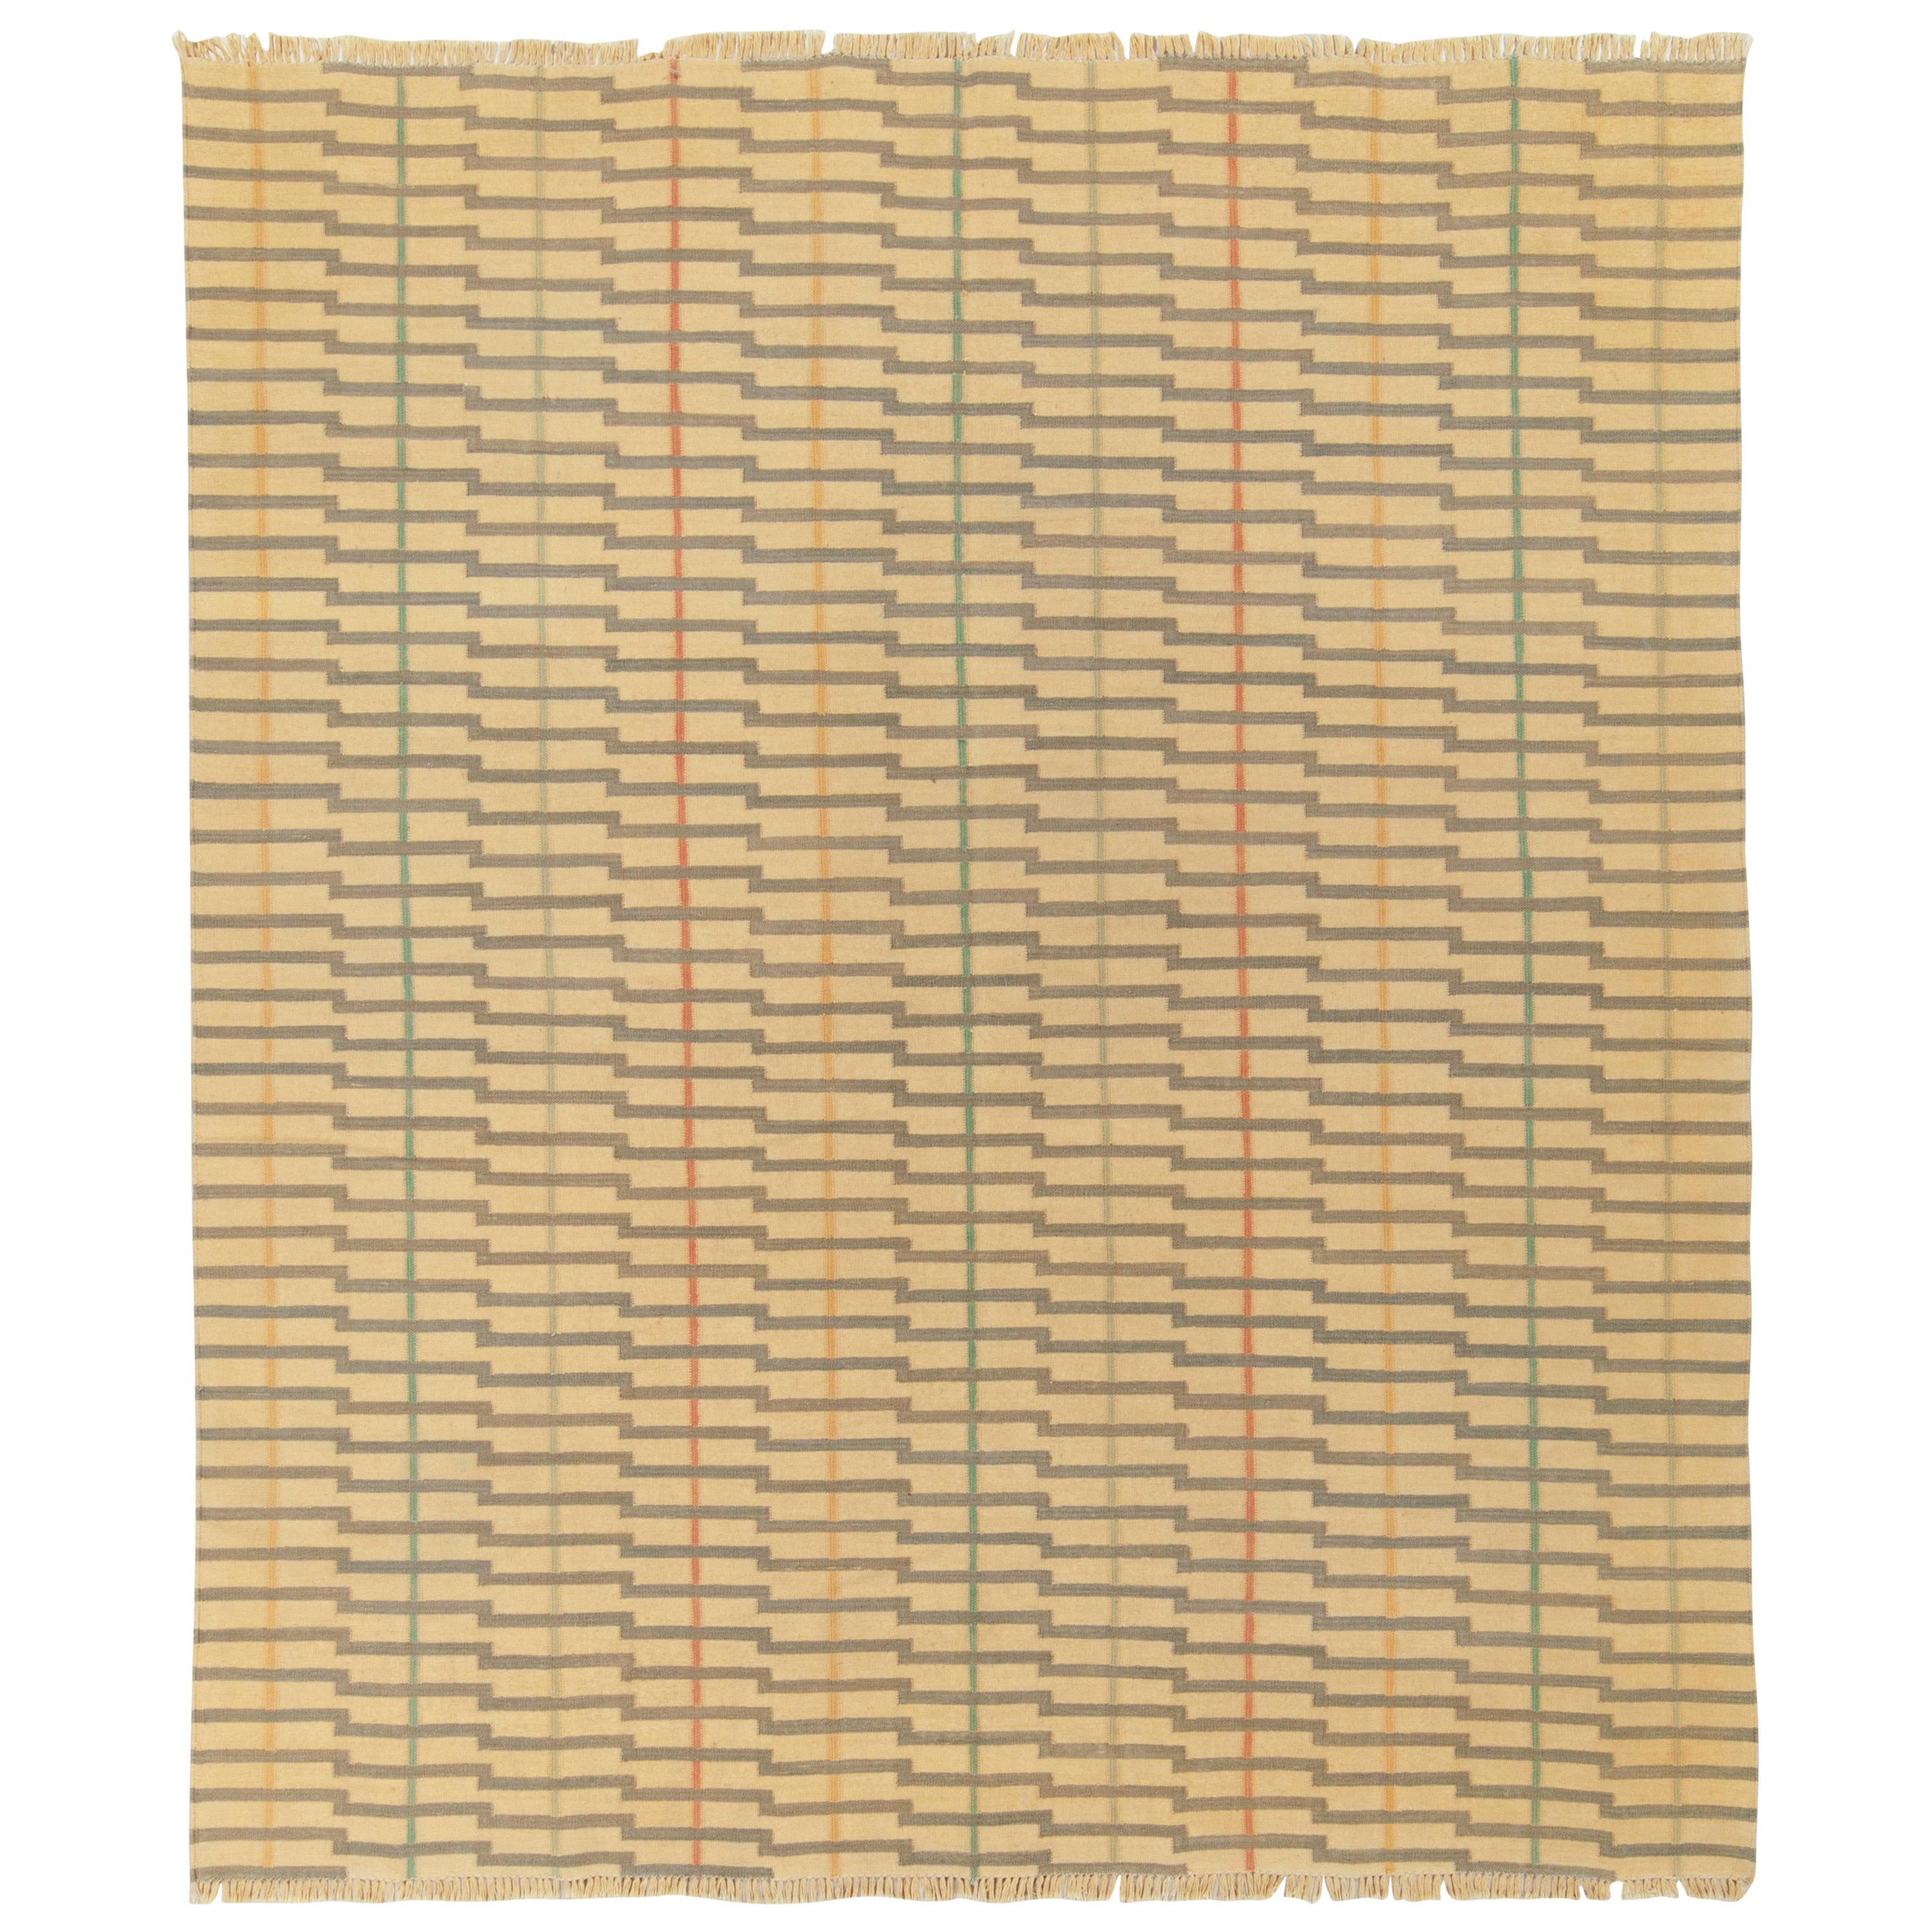 Tapis & Kilim's Contemporary Striped Flat Weave, crème, motif beige et brun